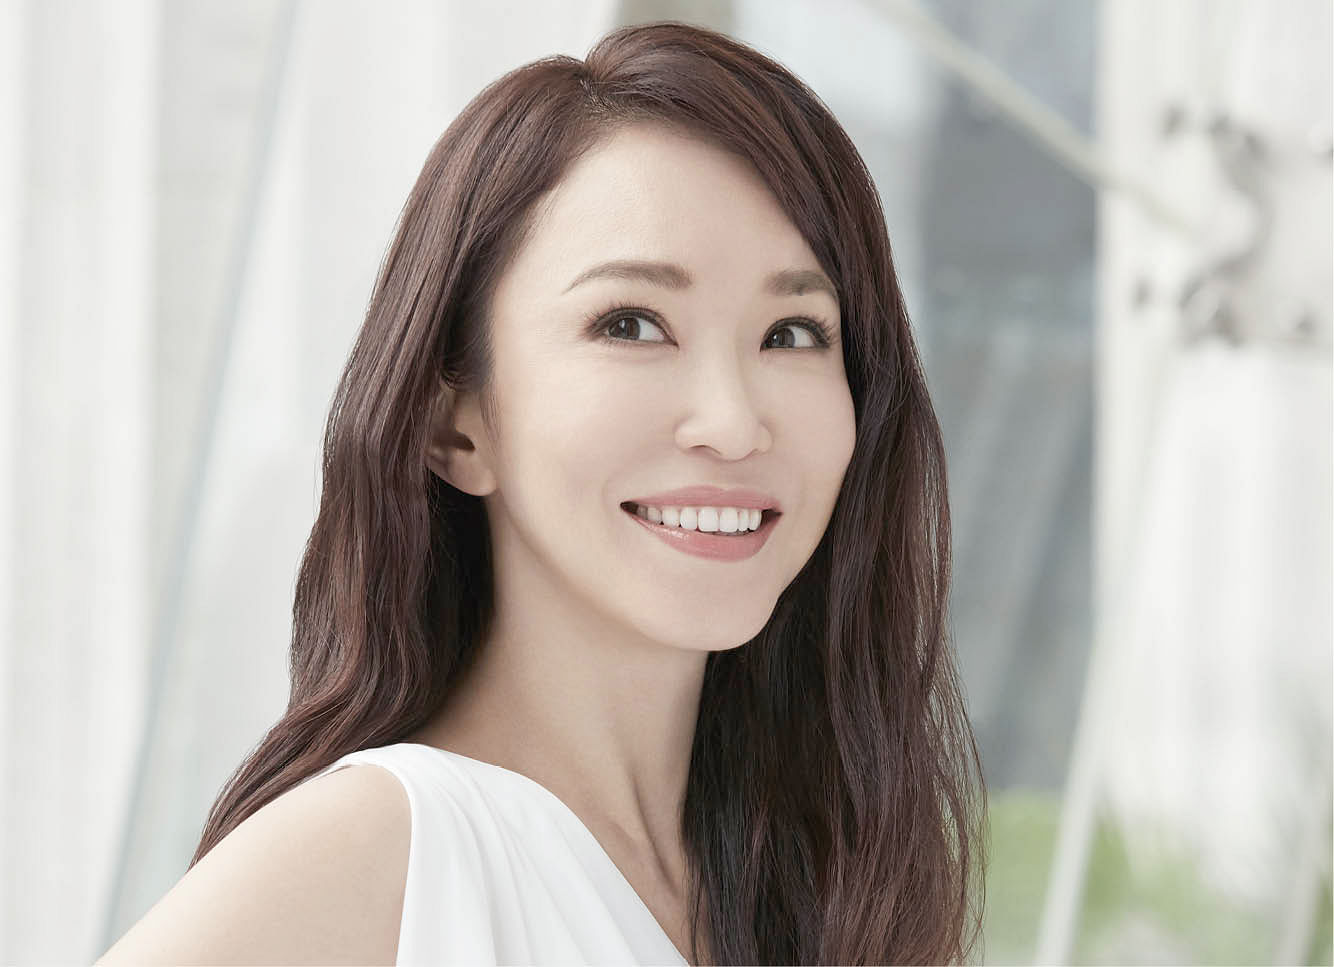 Fann Wong's top 9 beauty tips to look beautiful